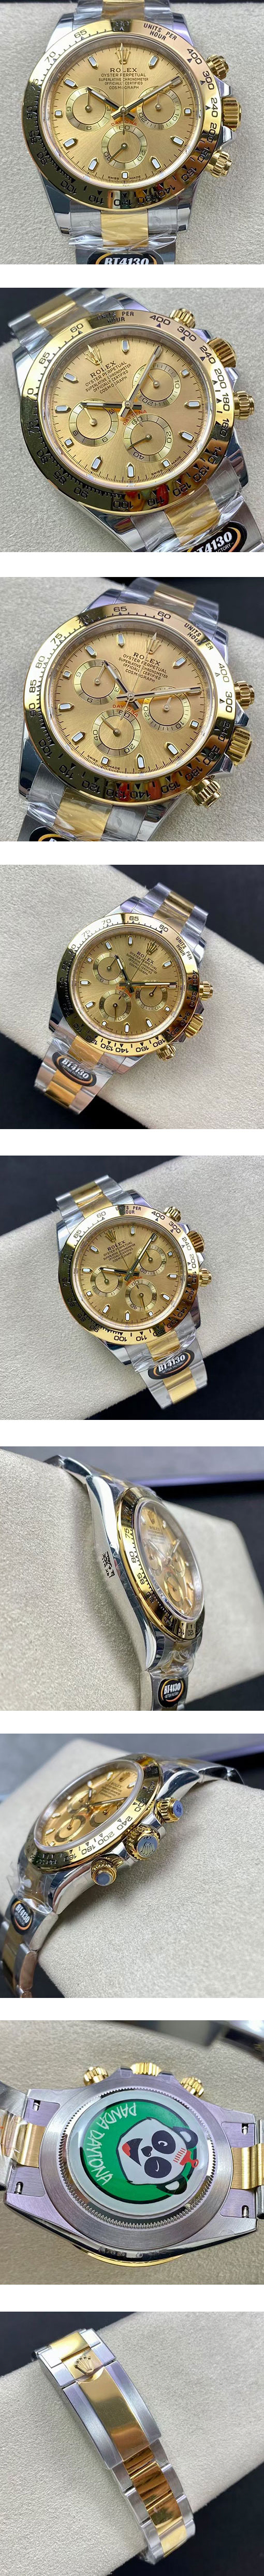 最高級のロレックス デイトナコピー販売 116503  メンズ腕時計 市場最大級の品揃え